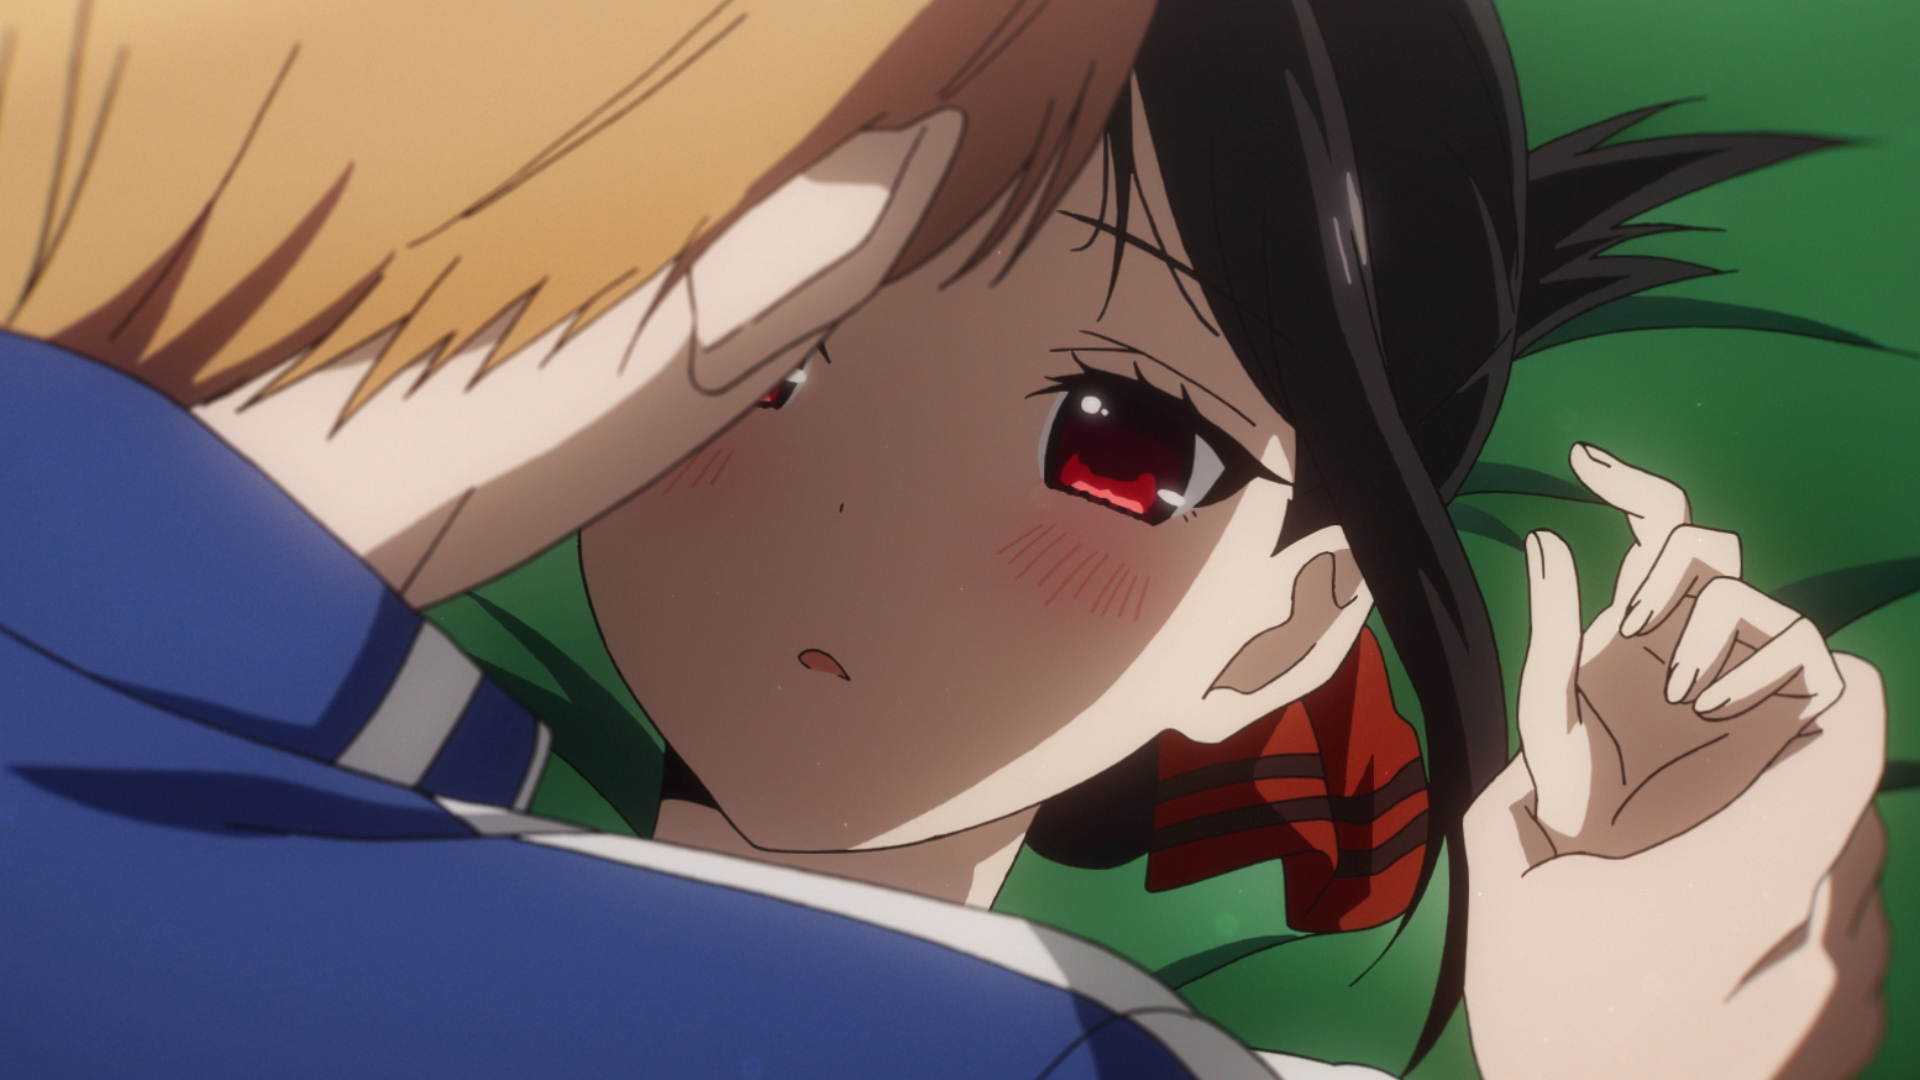 Miyuki and Kaguya almost kiss in Kaguya Sama Season 2 Episode 8